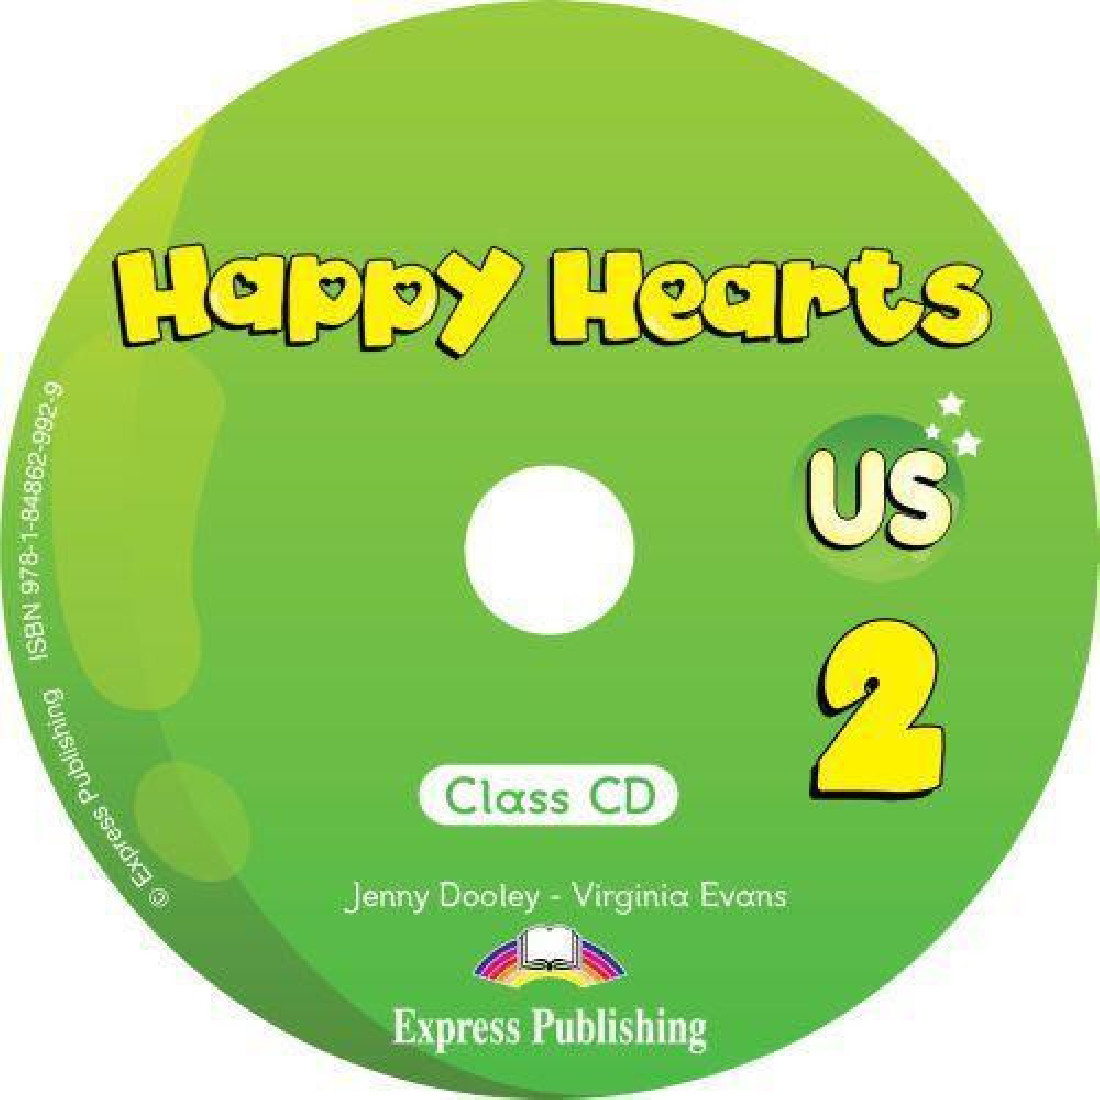 HAPPY HEARTS US 2 CD CLASS (1)